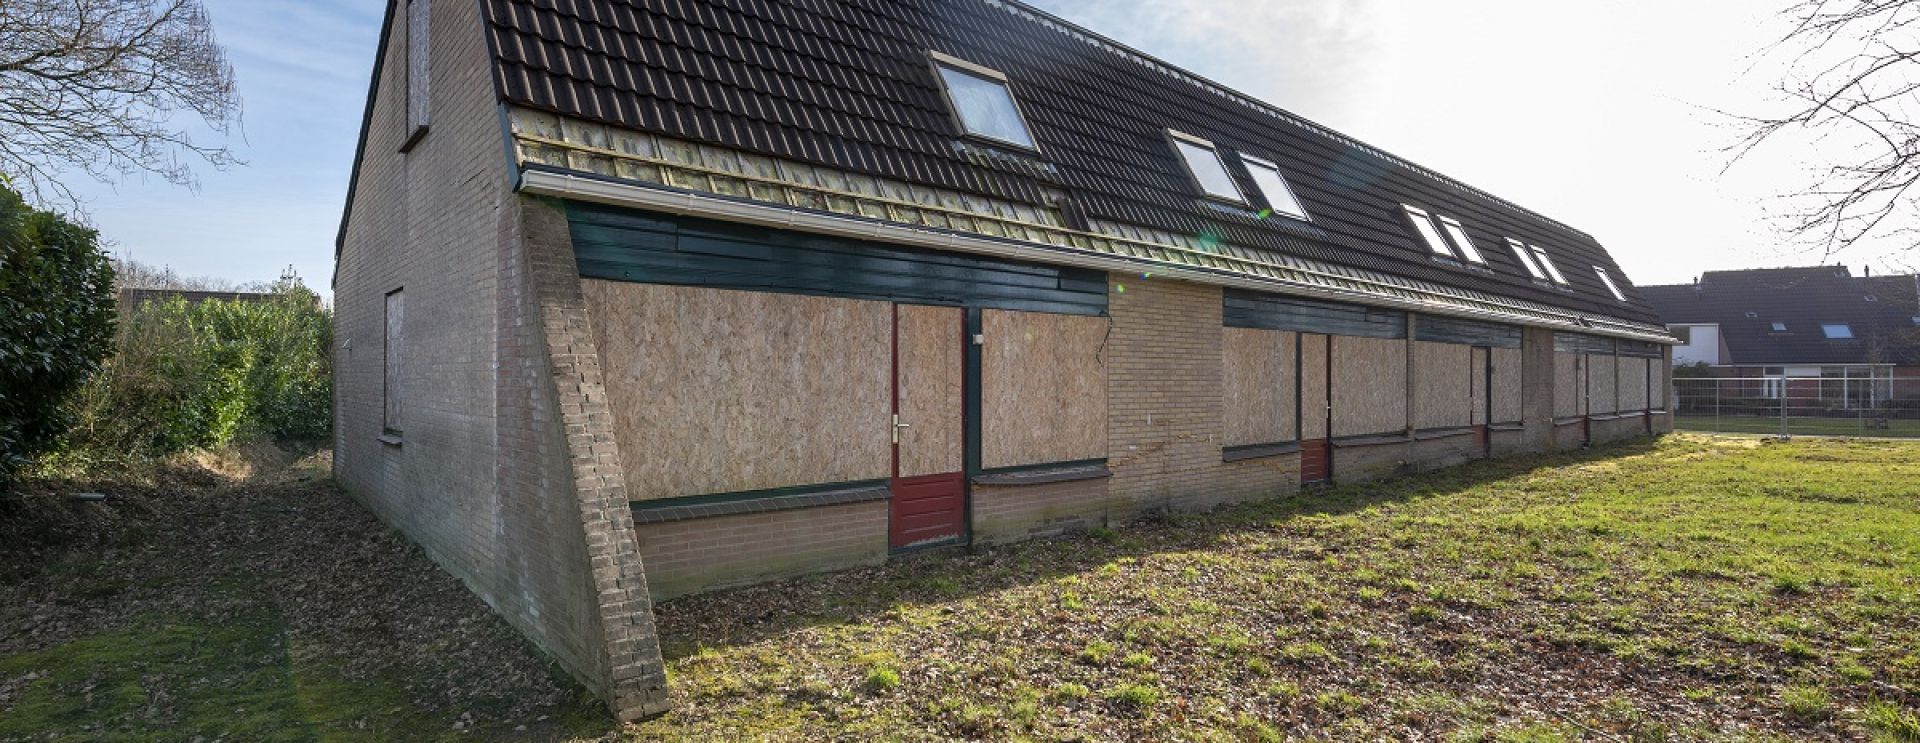 Woonborg herstelt verzakte woningen in Roden en bereidt groot onderhoud voor in wijk Roderveld  